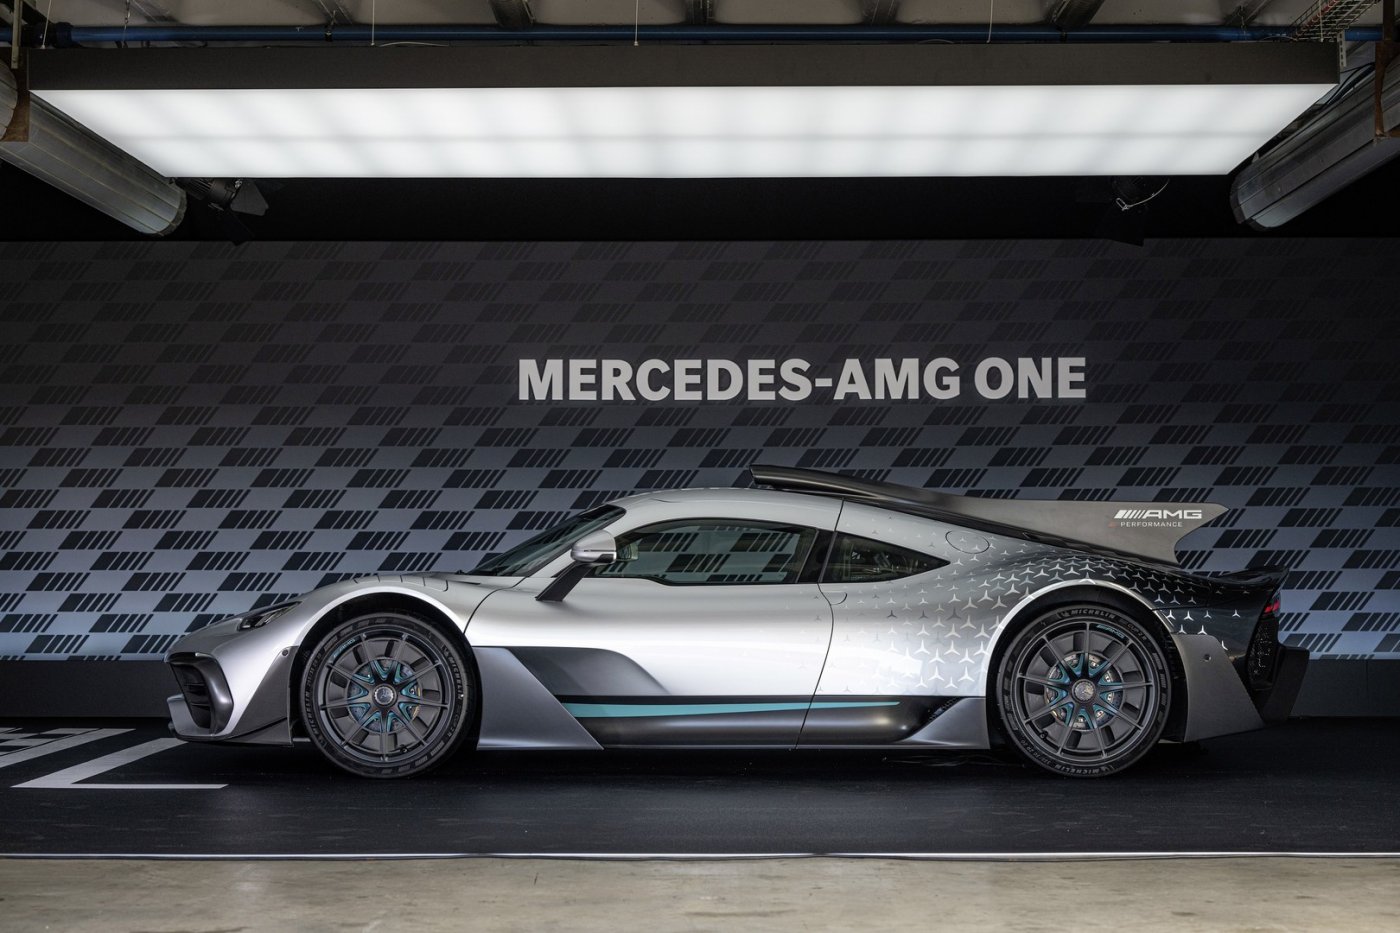 Luxusné auto? Už po nájazde 200 000 kilometrov náklady na údržbu prekonajú maloobchodnú cenu vozidla! Náklady na servis Mercedesu-AMG One môžu presiahnuť sumu neuveriteľných 850 000 eur!